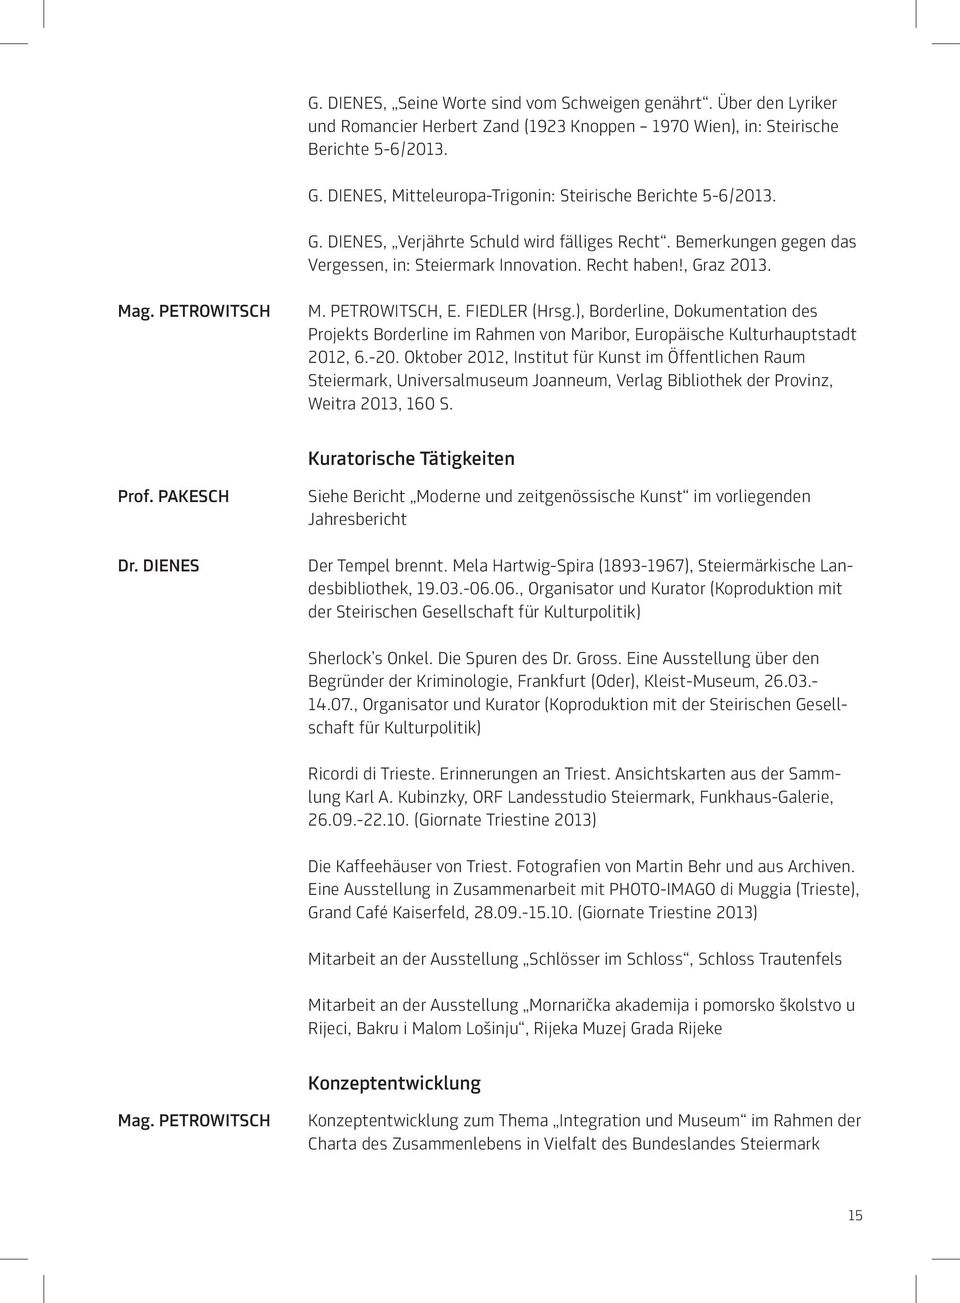 PETROWITSCH M. Petrowitsch, E. Fiedler (Hrsg.), Borderline, Dokumentation des Projekts Borderline im Rahmen von Maribor, Europäische Kulturhauptstadt 2012, 6.-20.